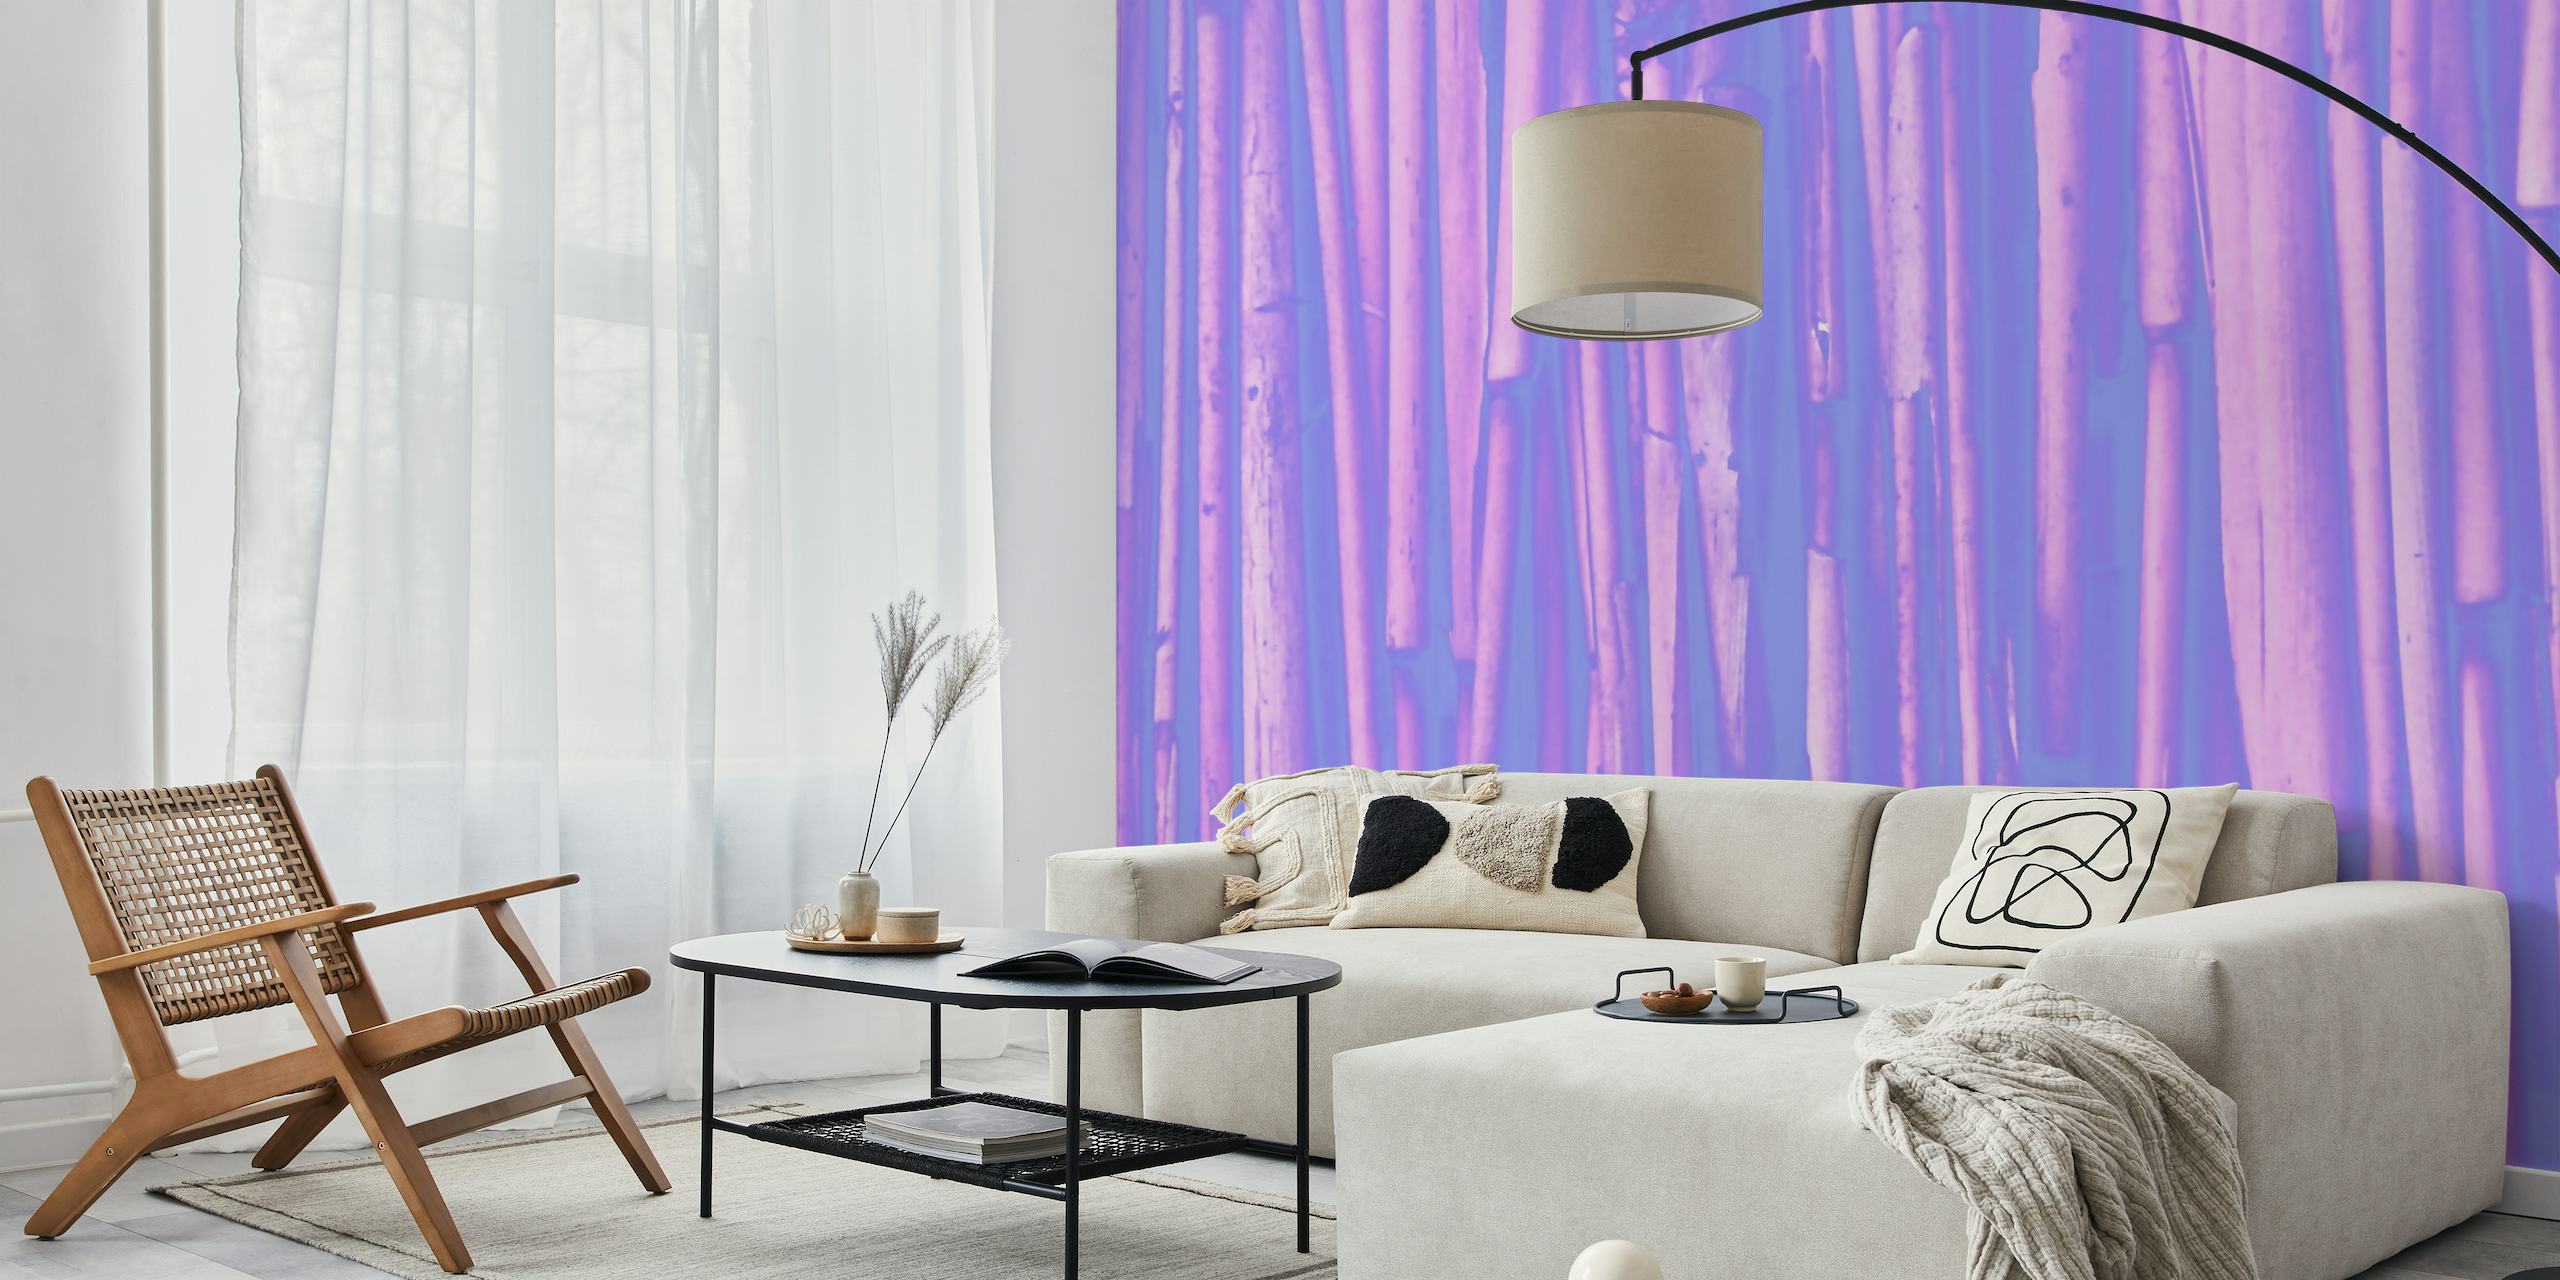 Fotobehang van gestileerde paarse bamboestokken die een rustige en elegante sfeer creëren.